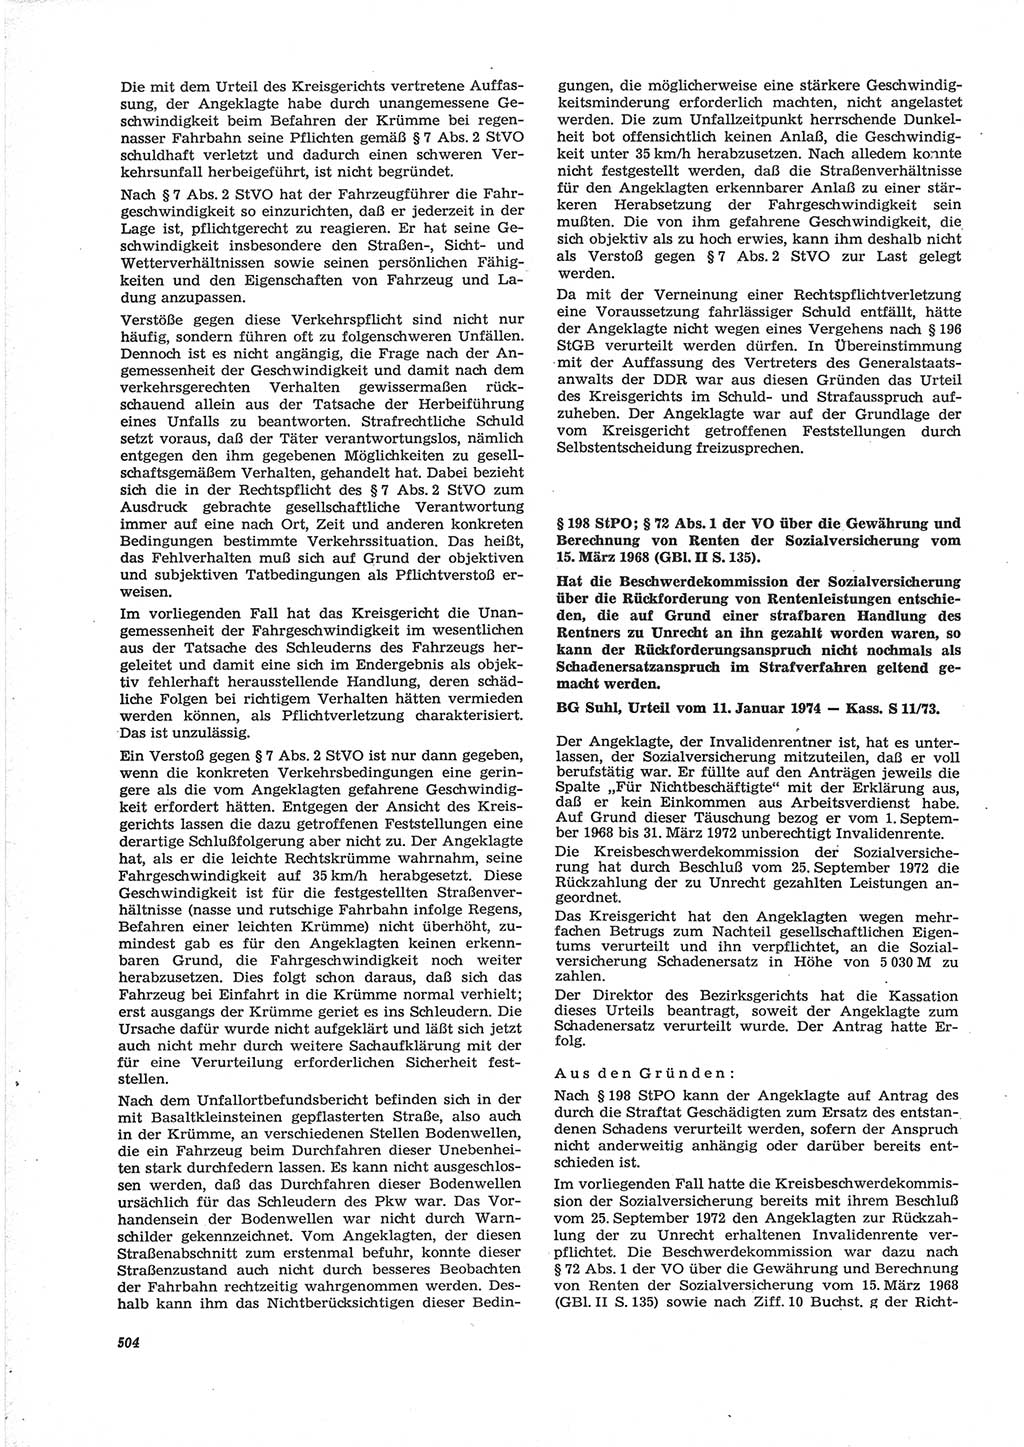 Neue Justiz (NJ), Zeitschrift für Recht und Rechtswissenschaft [Deutsche Demokratische Republik (DDR)], 28. Jahrgang 1974, Seite 504 (NJ DDR 1974, S. 504)